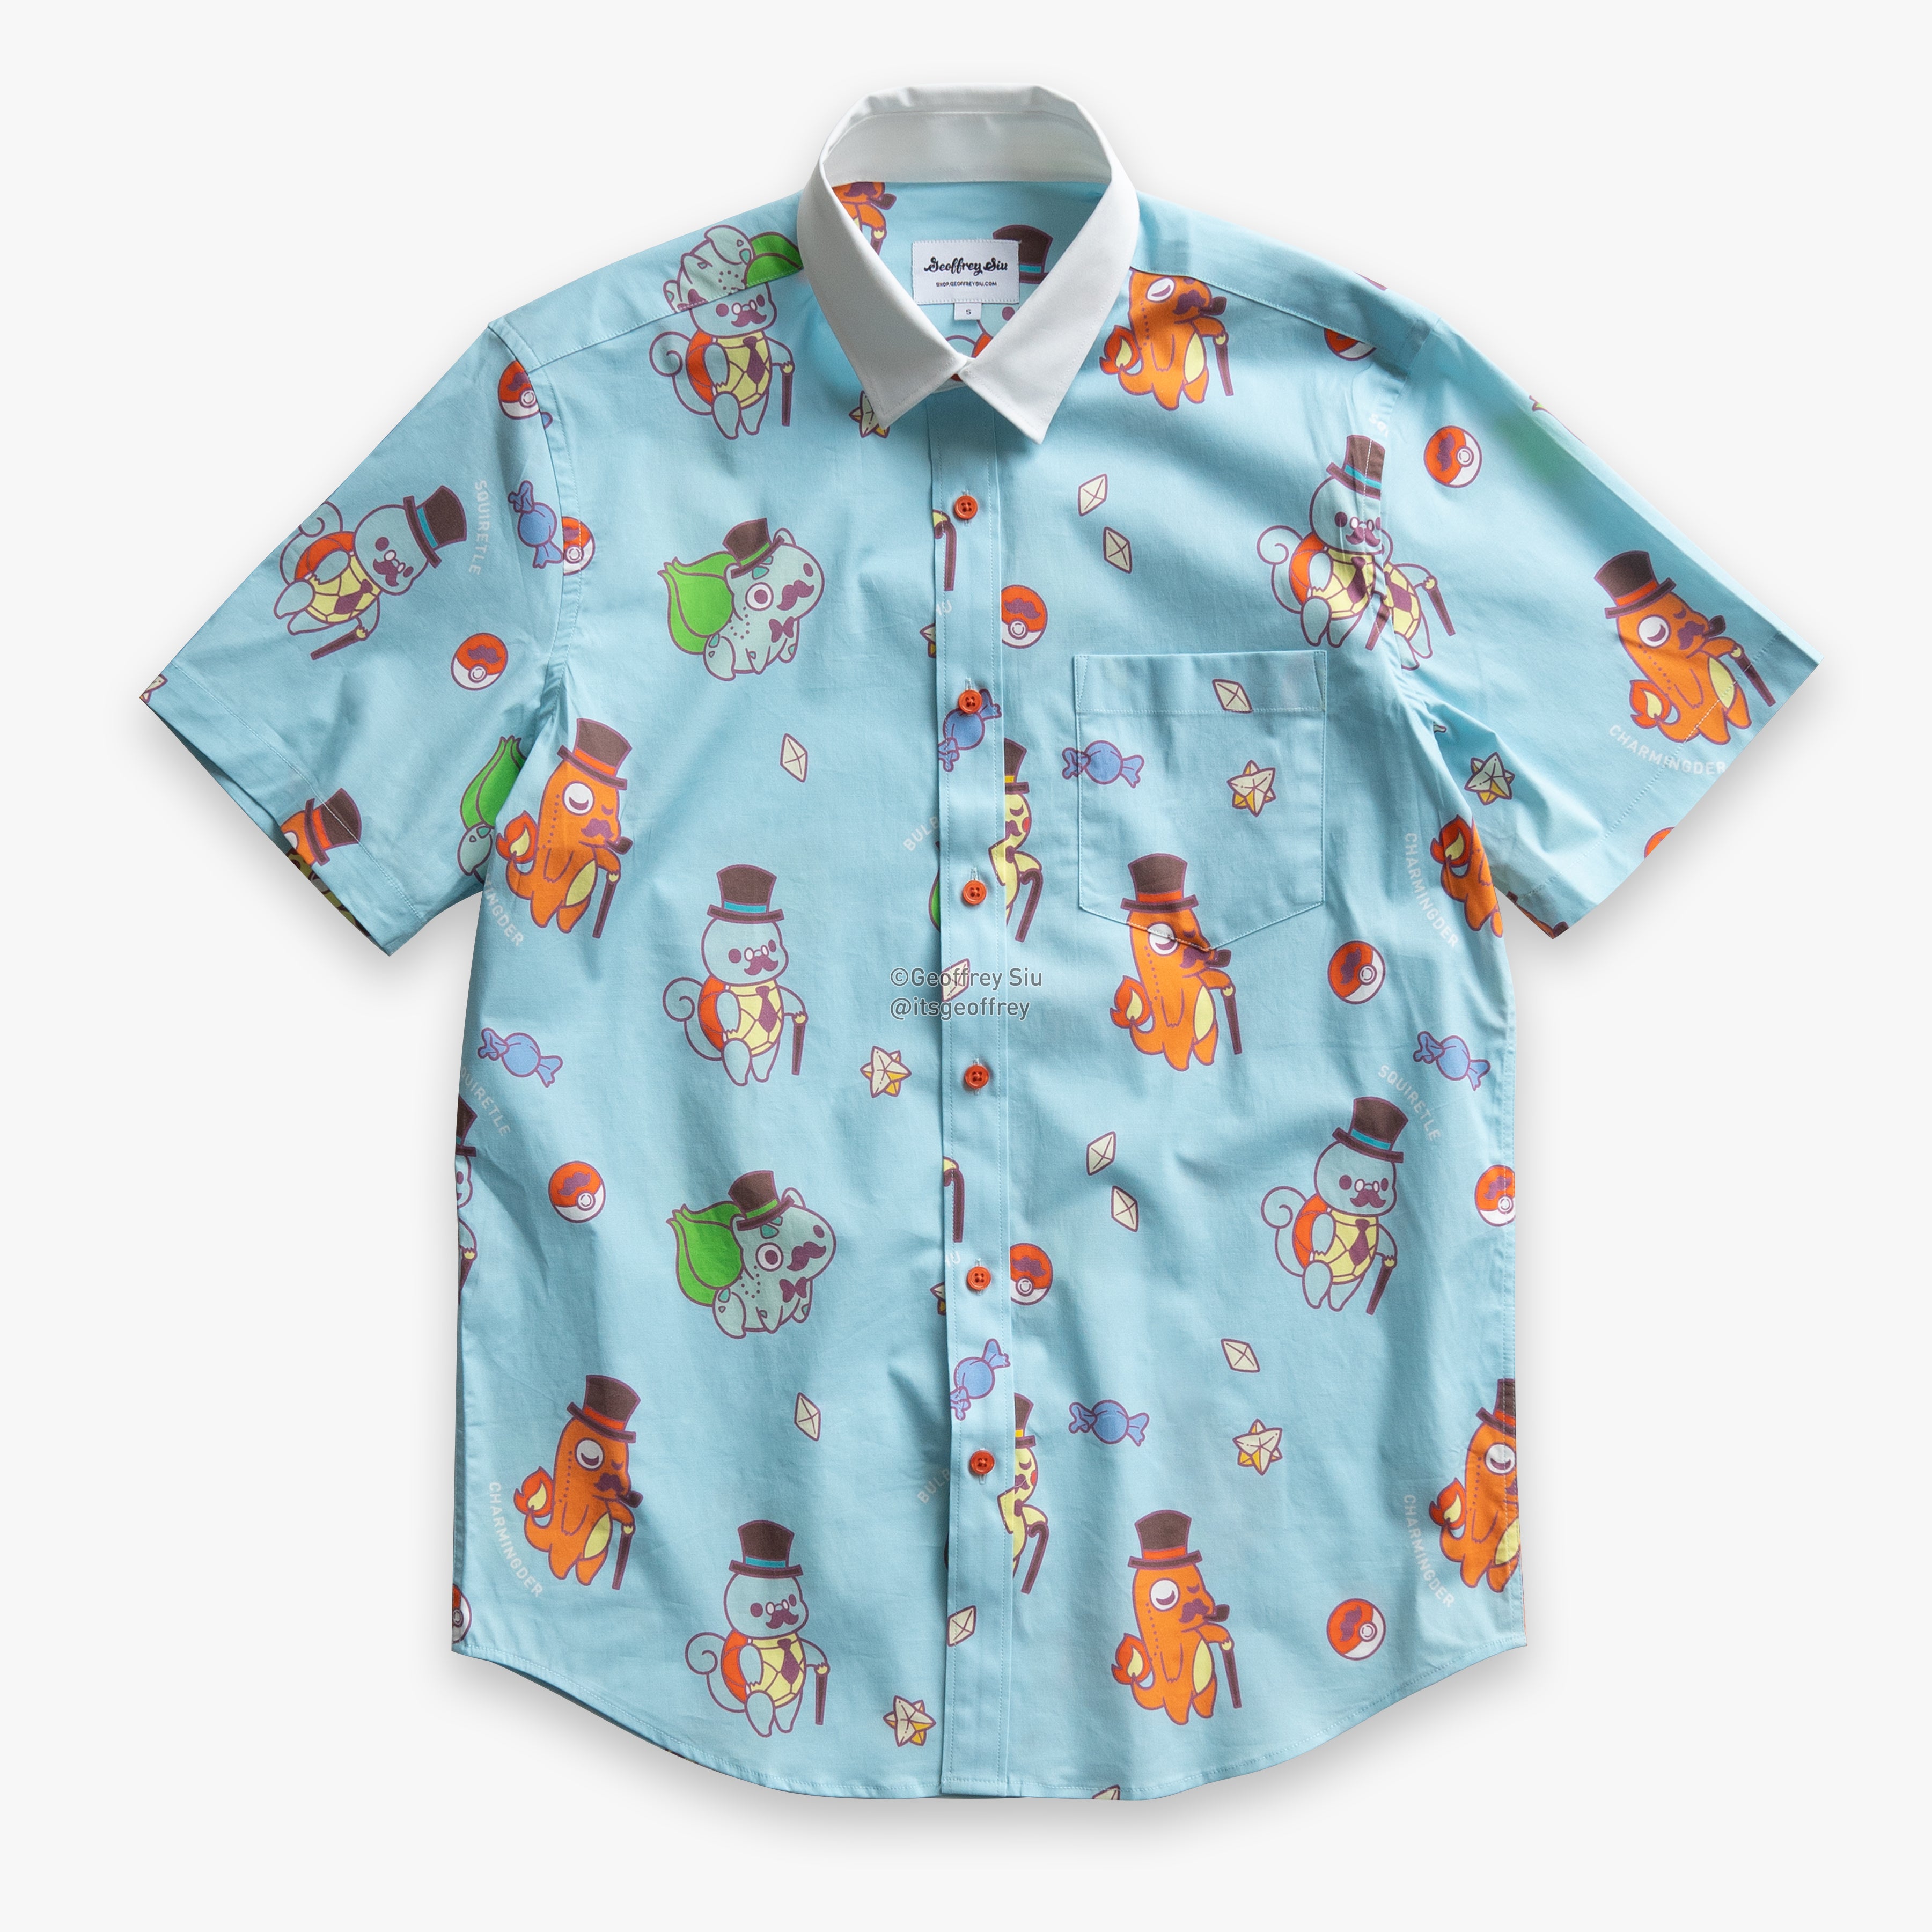 Gentlemon 1 Button-Up Shirt